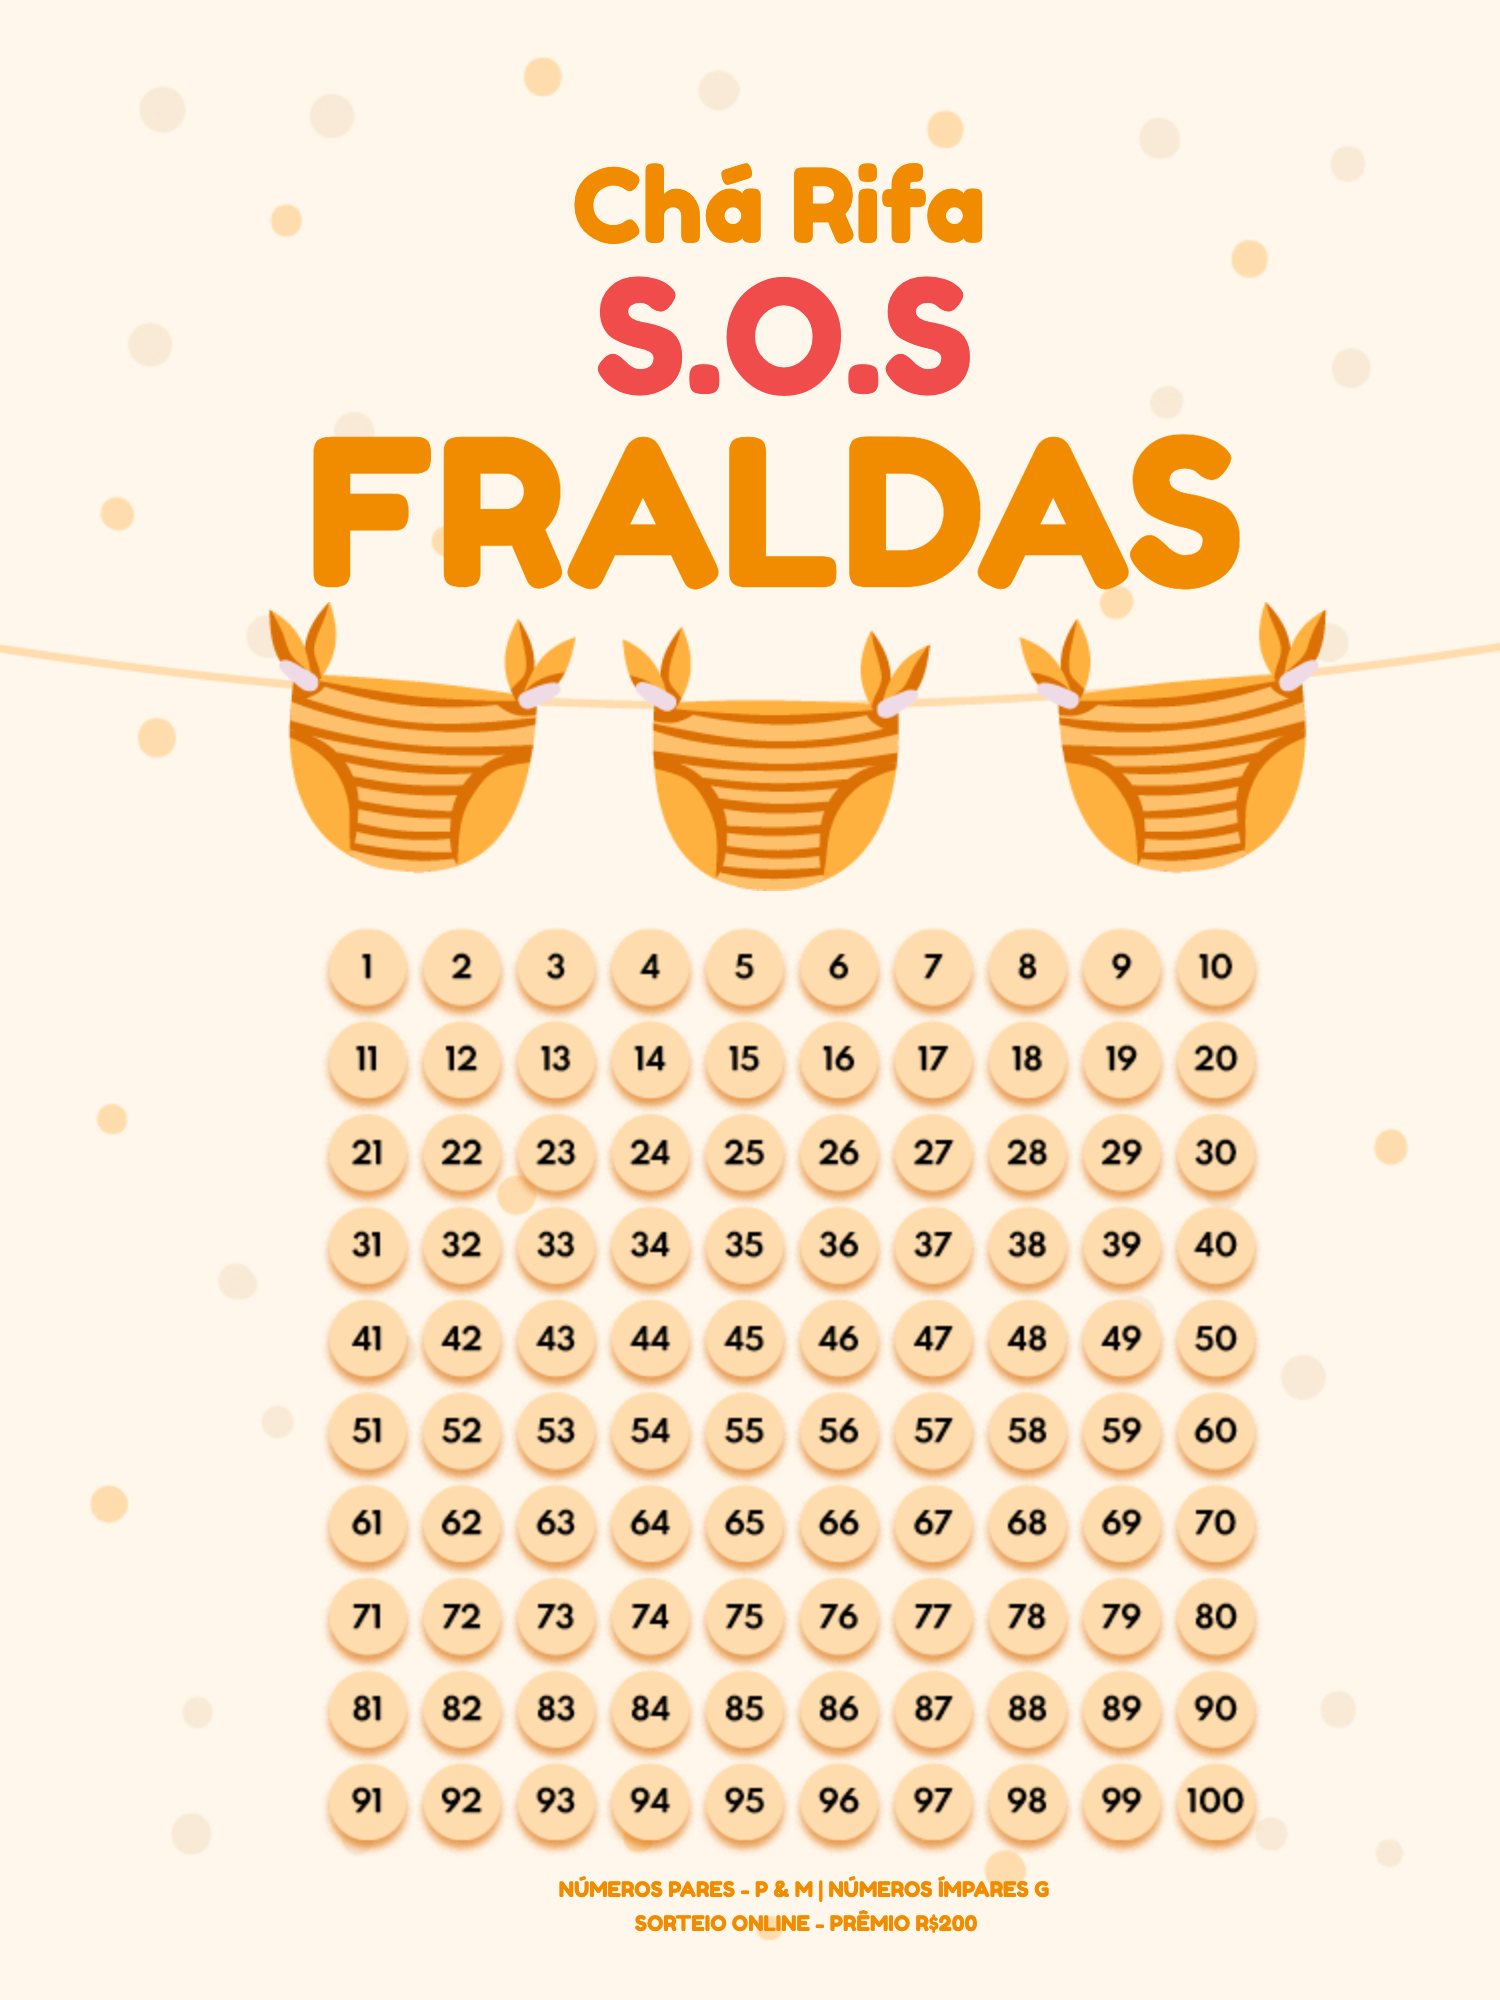 Editar e Baixar Convite Chá Rifa Fraldas, chá de bebê, chá rifa, menina, menina, fralda, criança, infantil, amarelo, laranja